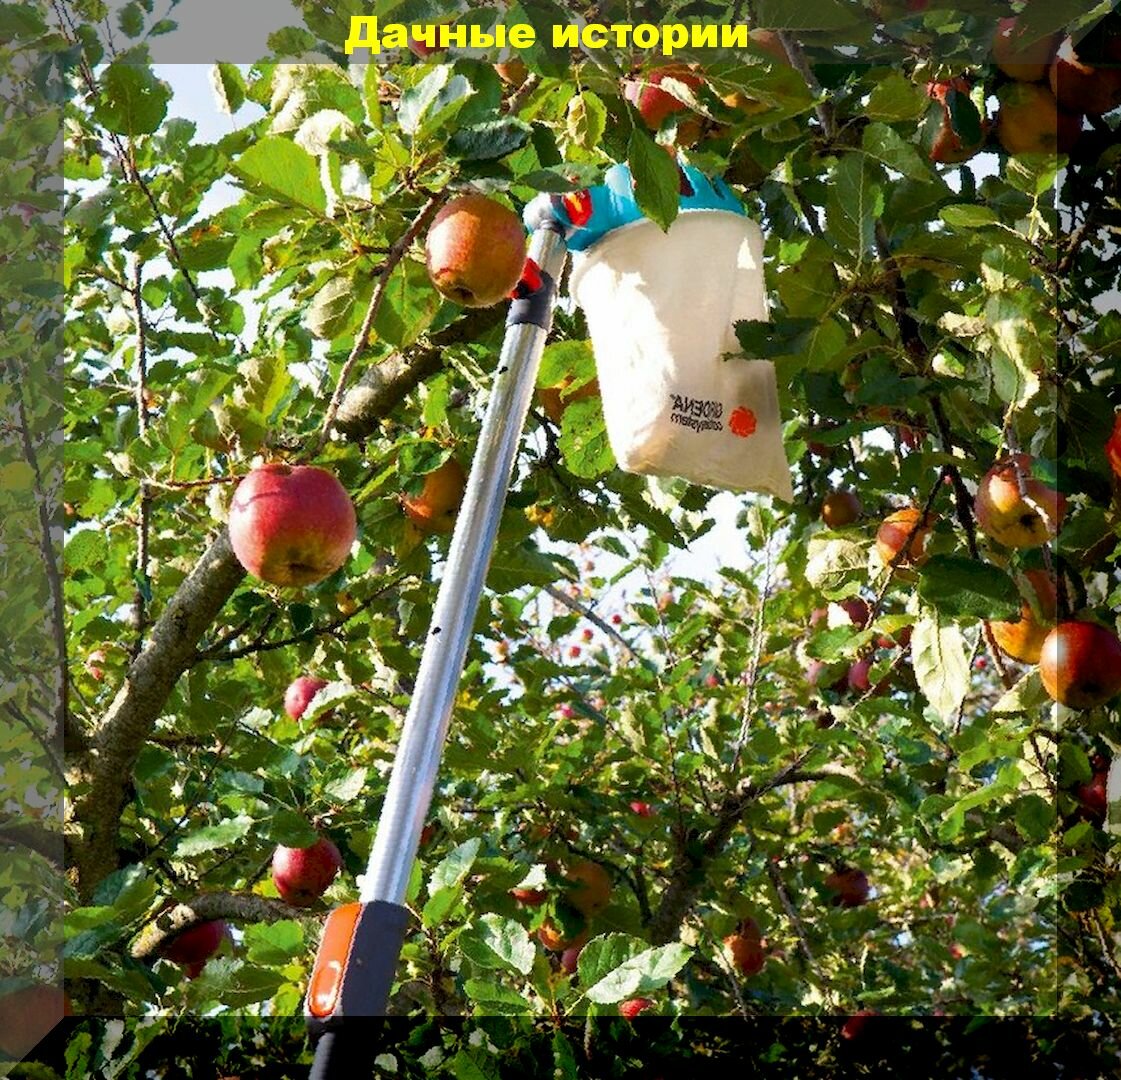 Как сохранить яблоки и груши как можно дольше: важные правила снятия яблок и груш, которые позволят максимально долго сохранить урожай